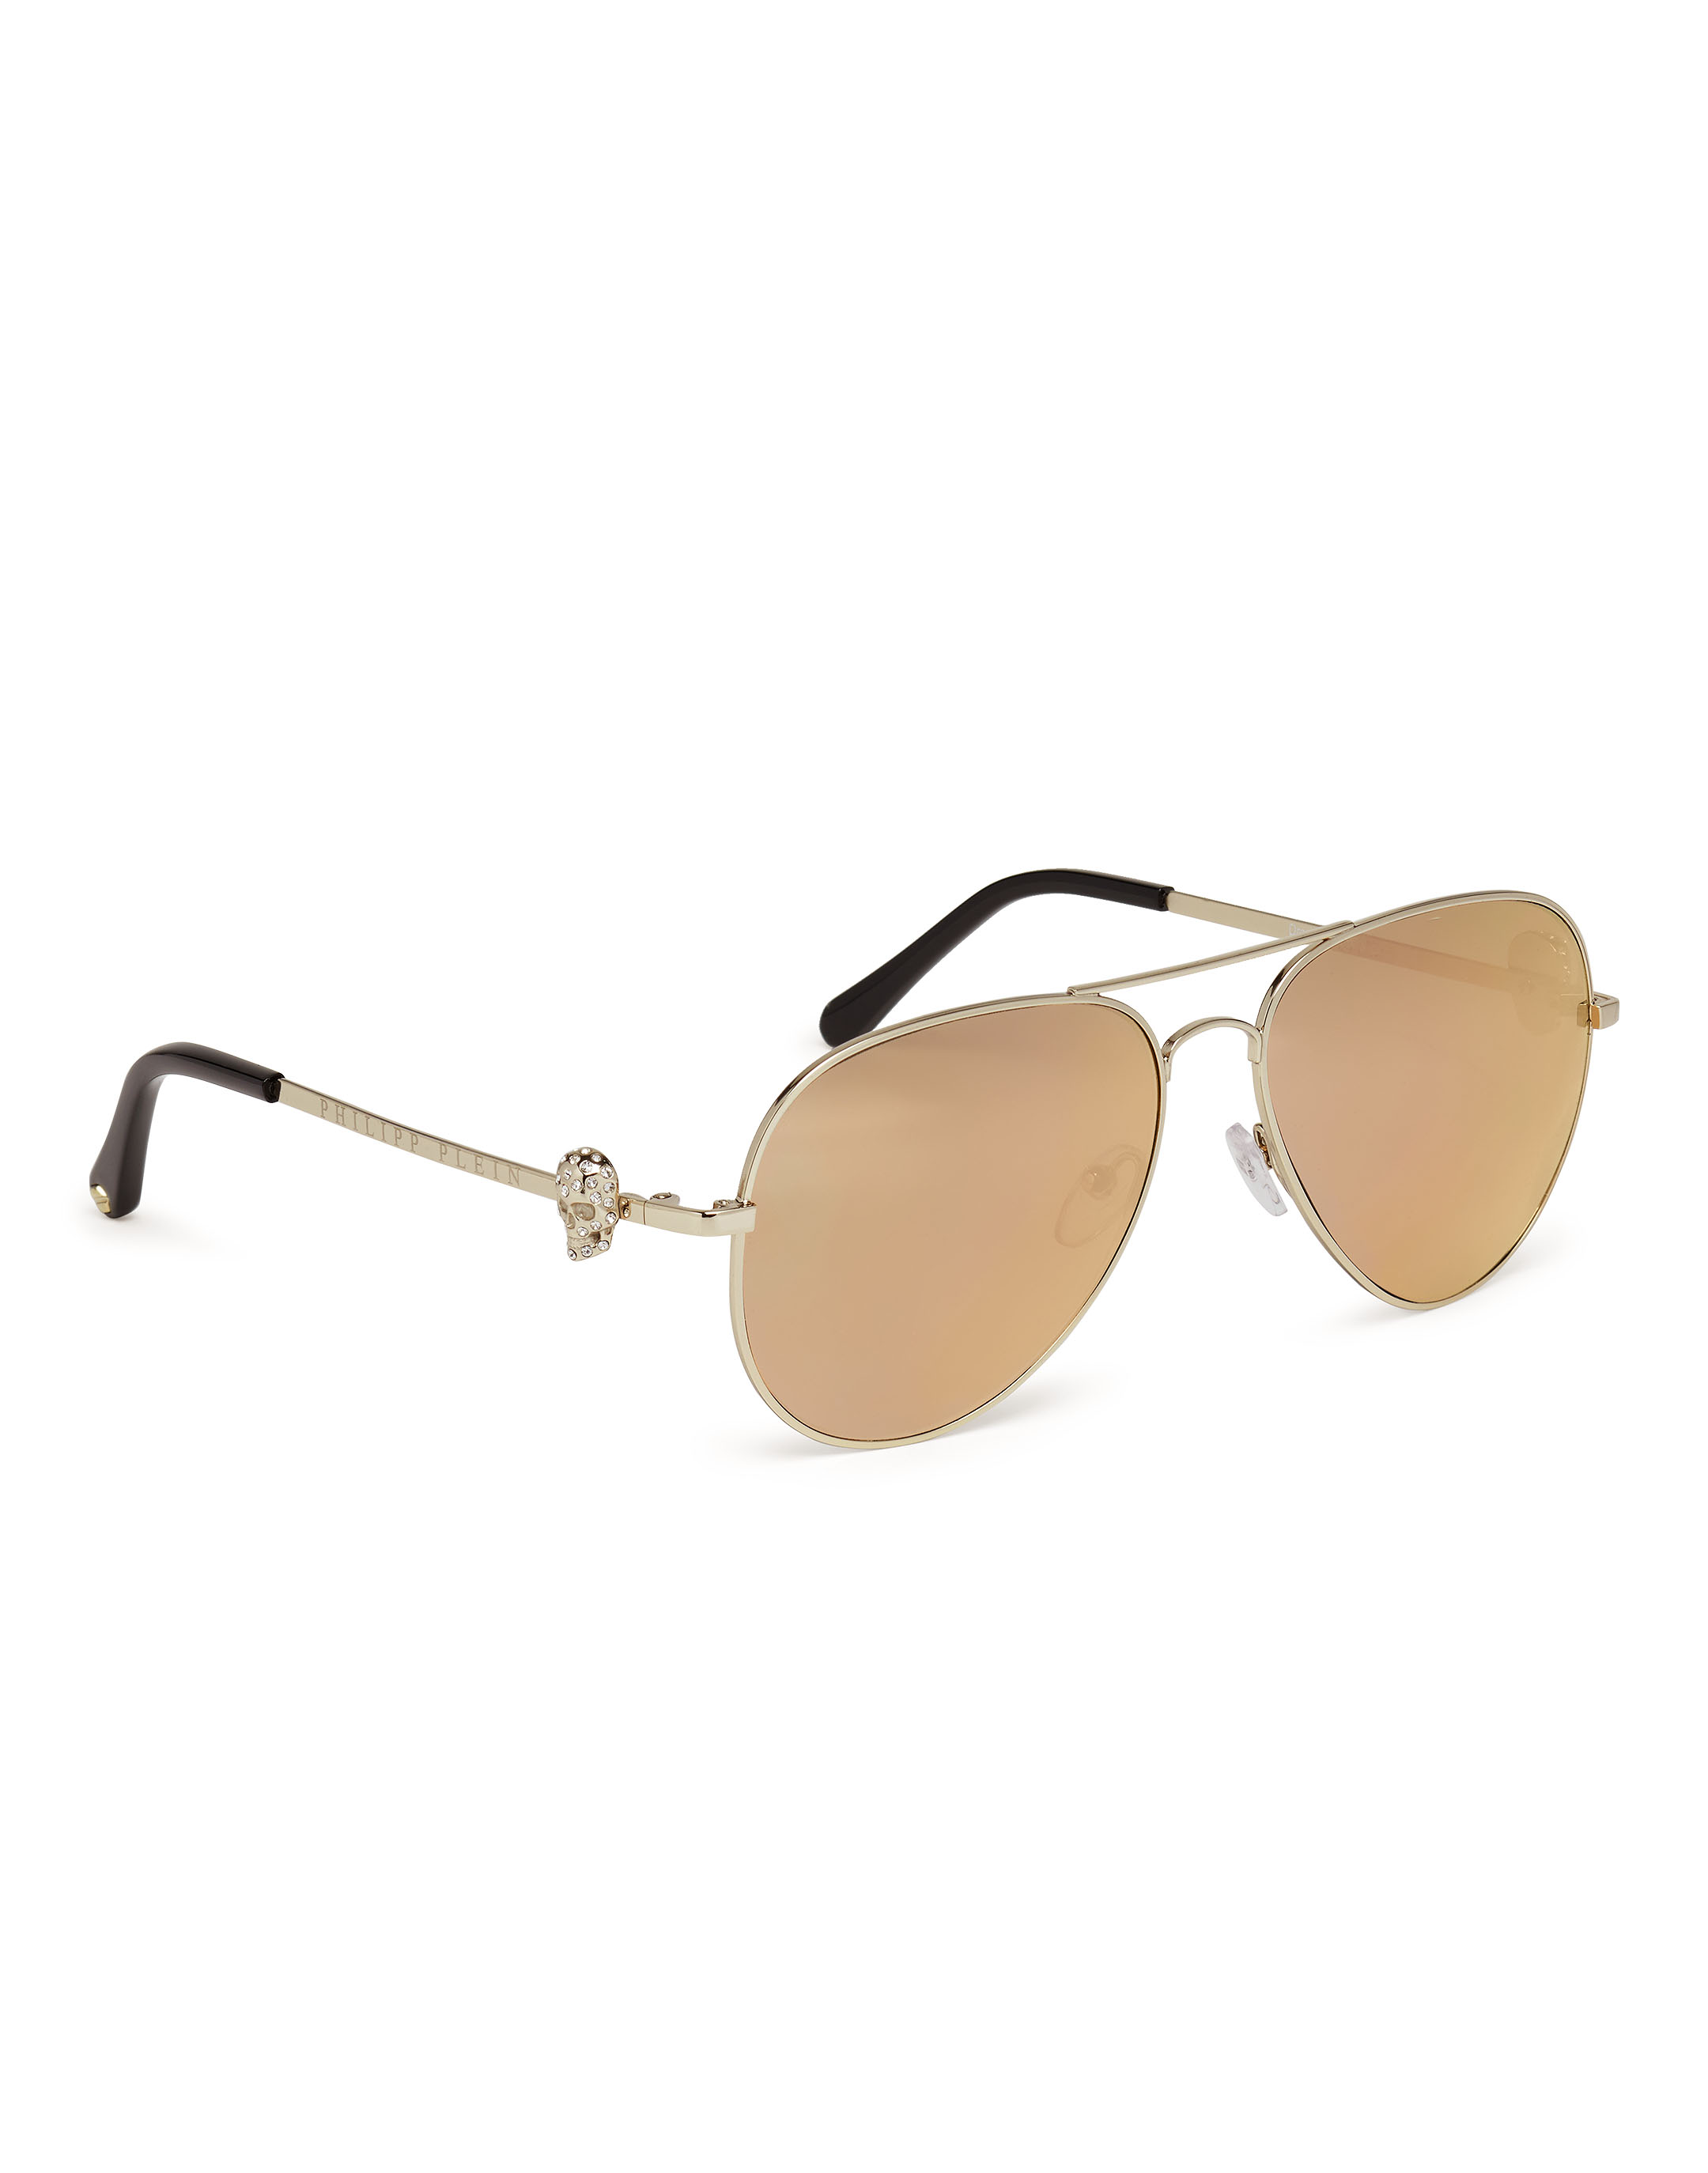 Sunglasses "Drop" | Philipp Plein Outlet